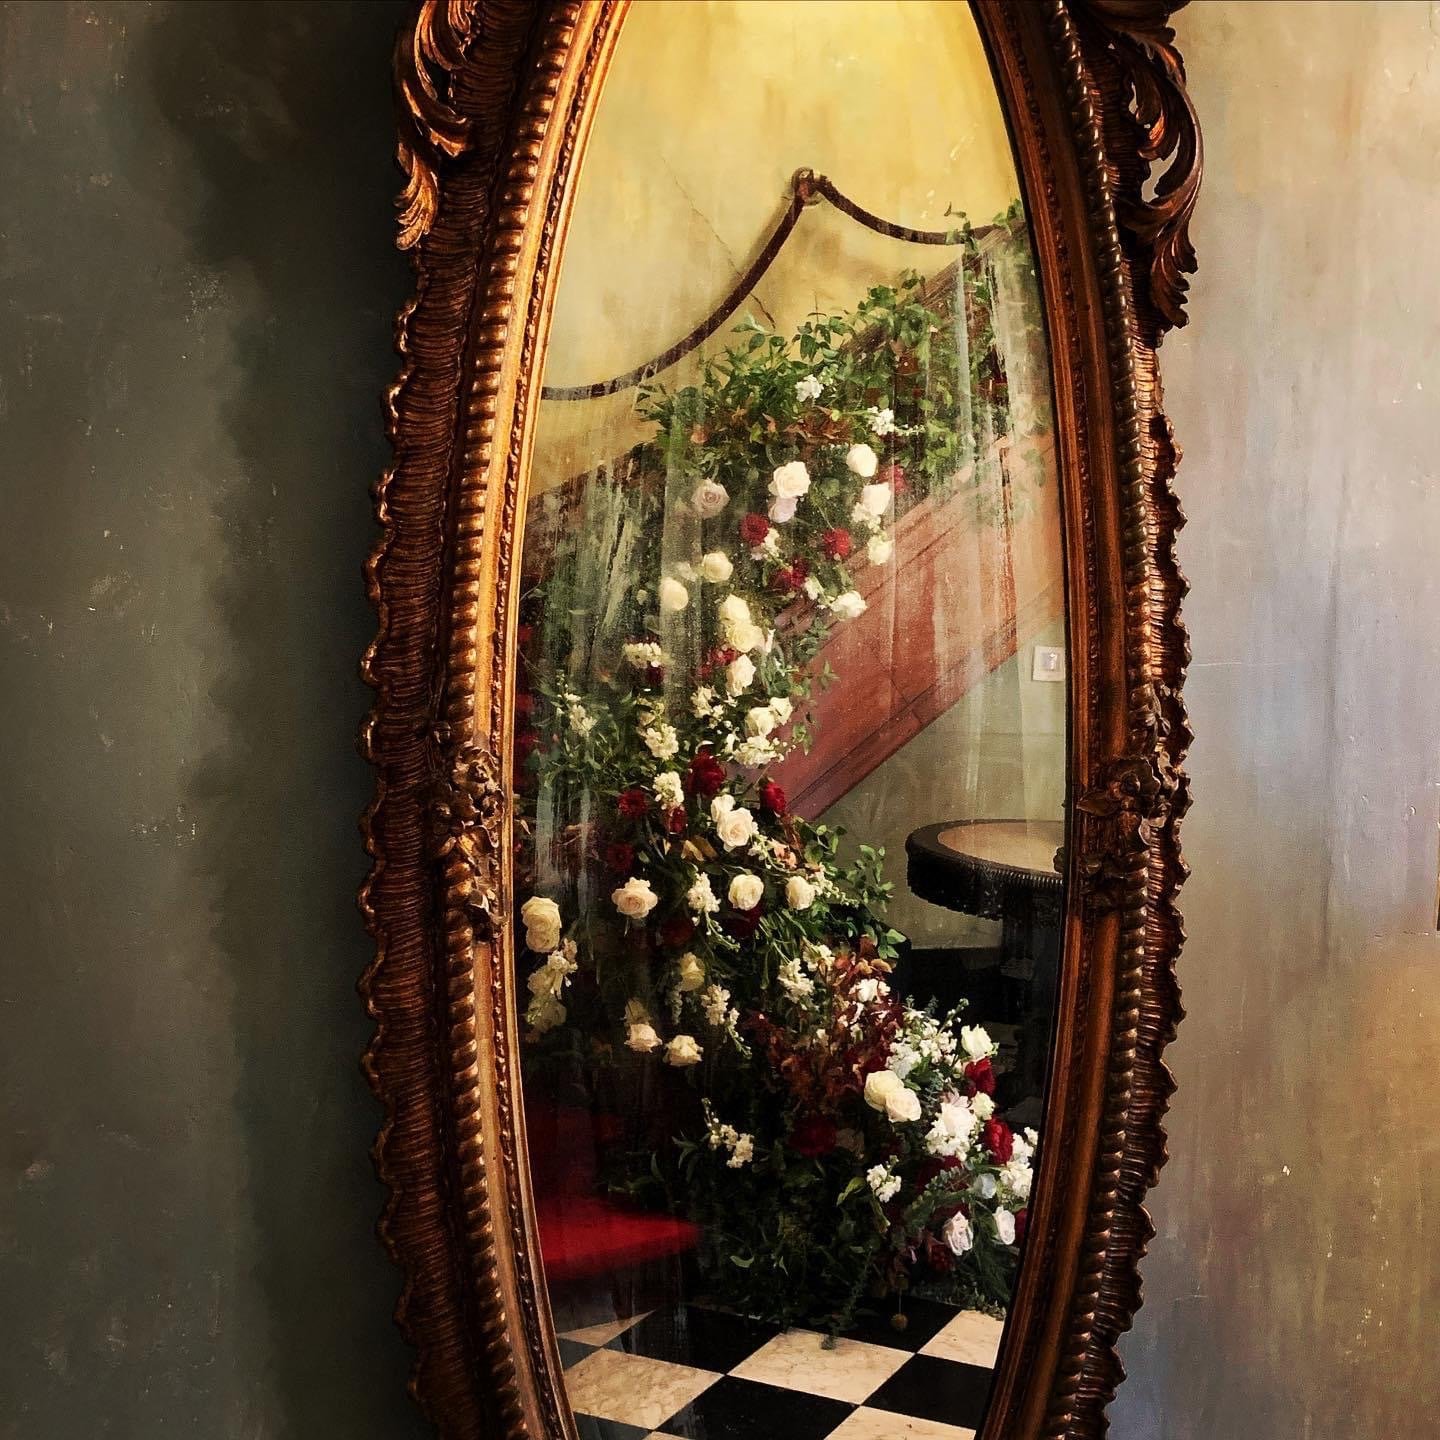 annesdale mansion stairwell florals.jpeg